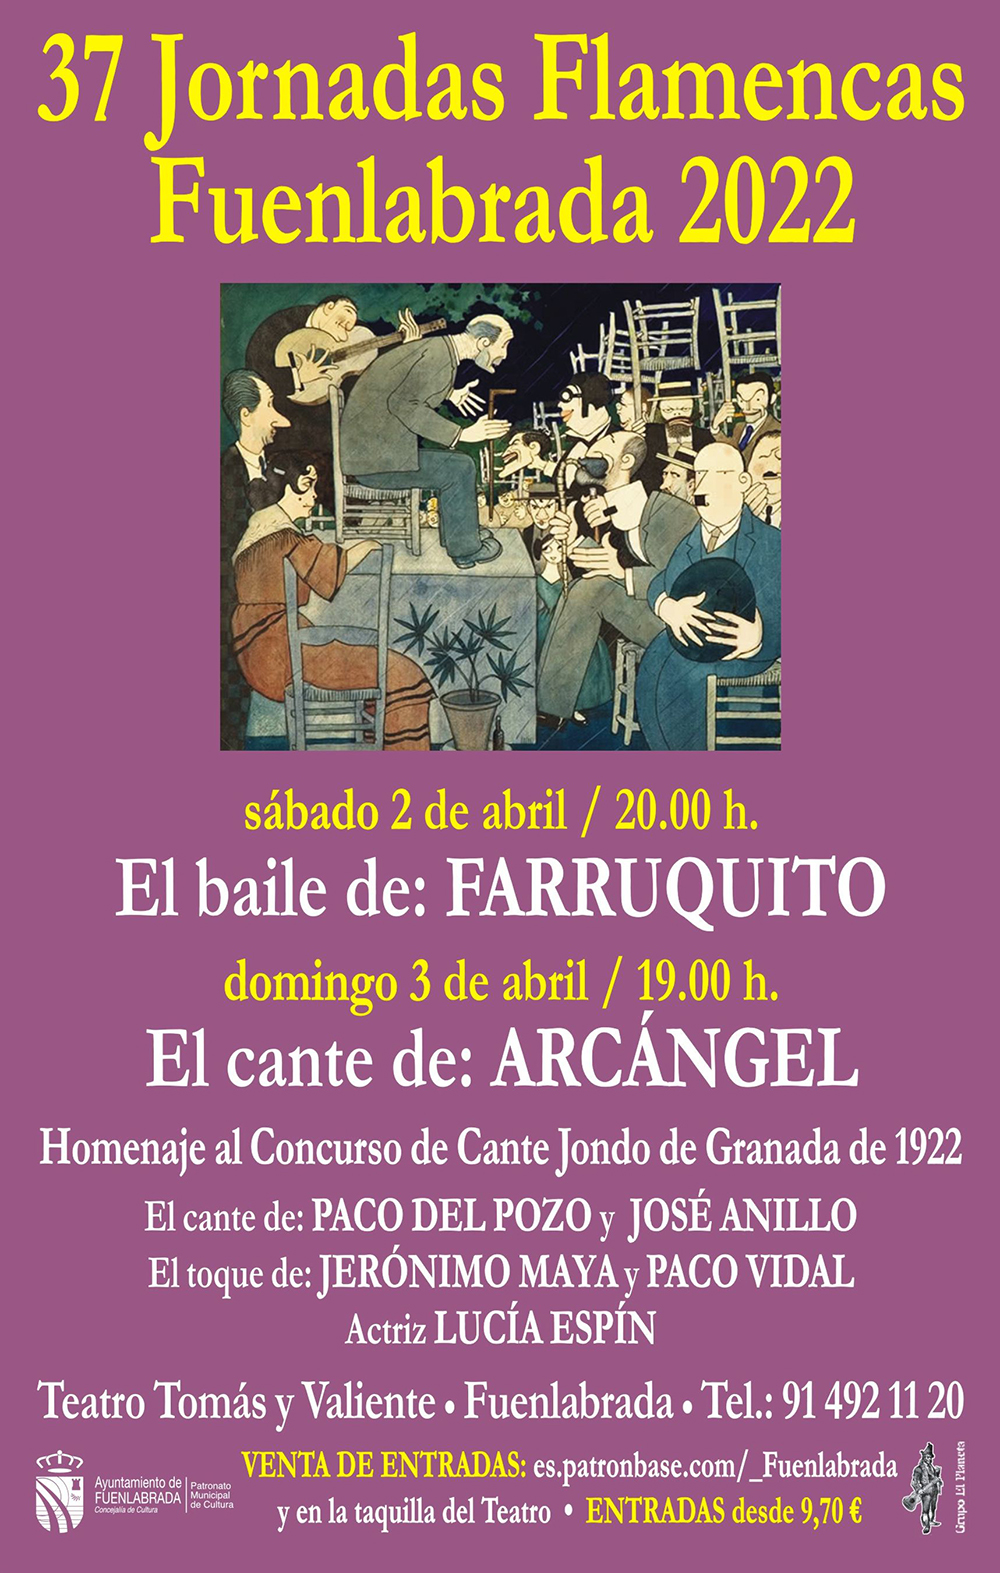 Las Jornadas Flamencas de Fuenlabrada 2022 presentan a Farruquito y Arcángel